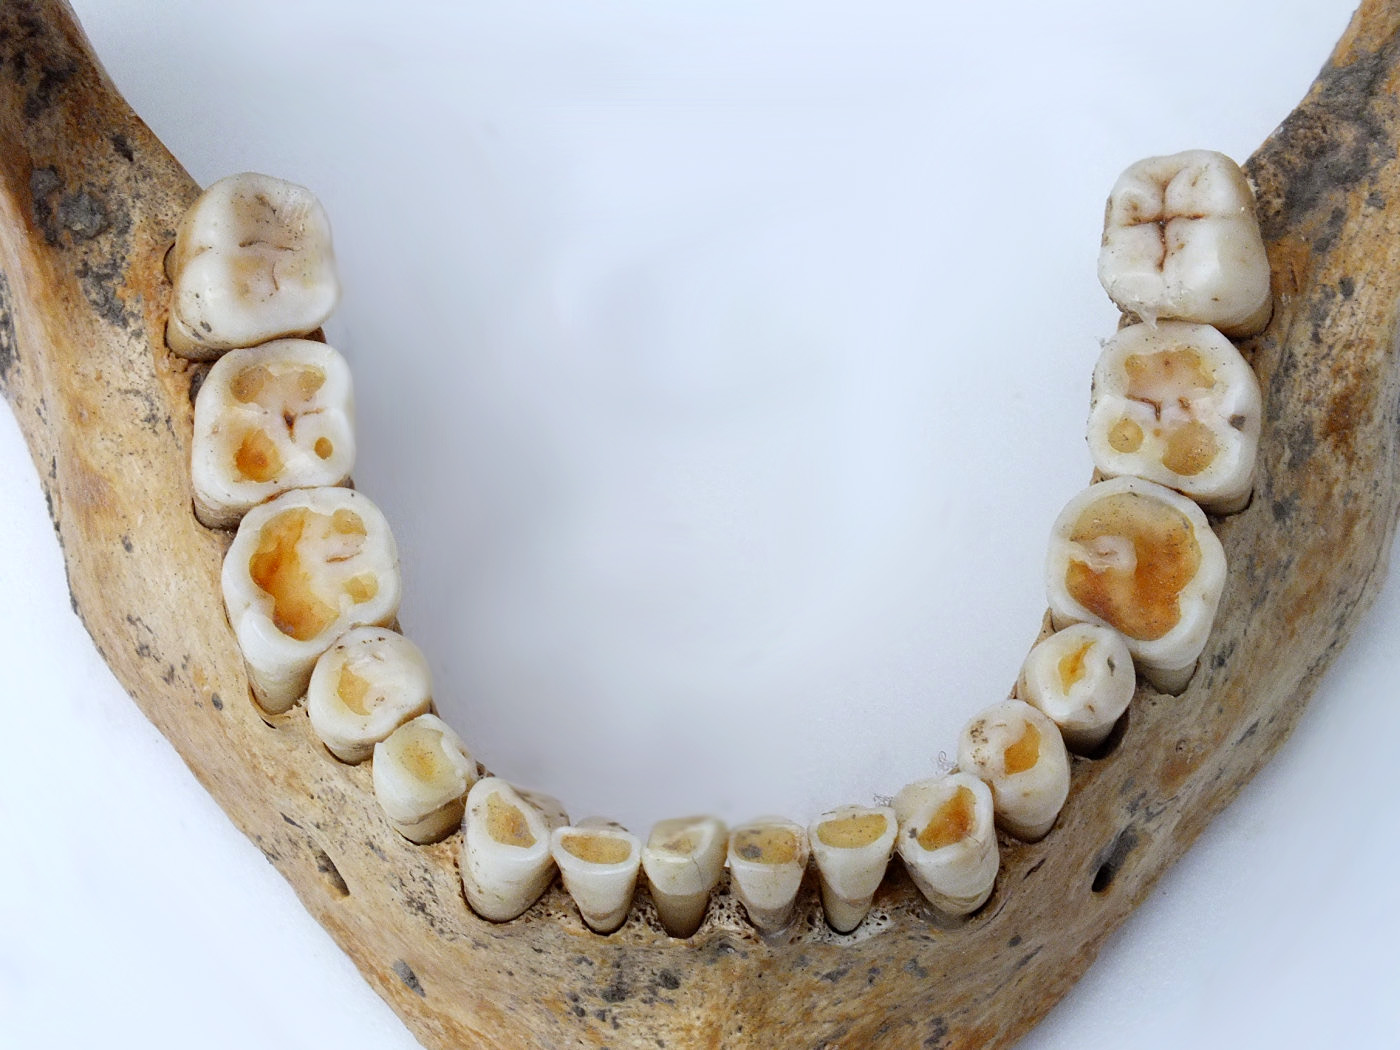 A középkori táplálkozás tükre, a fogak